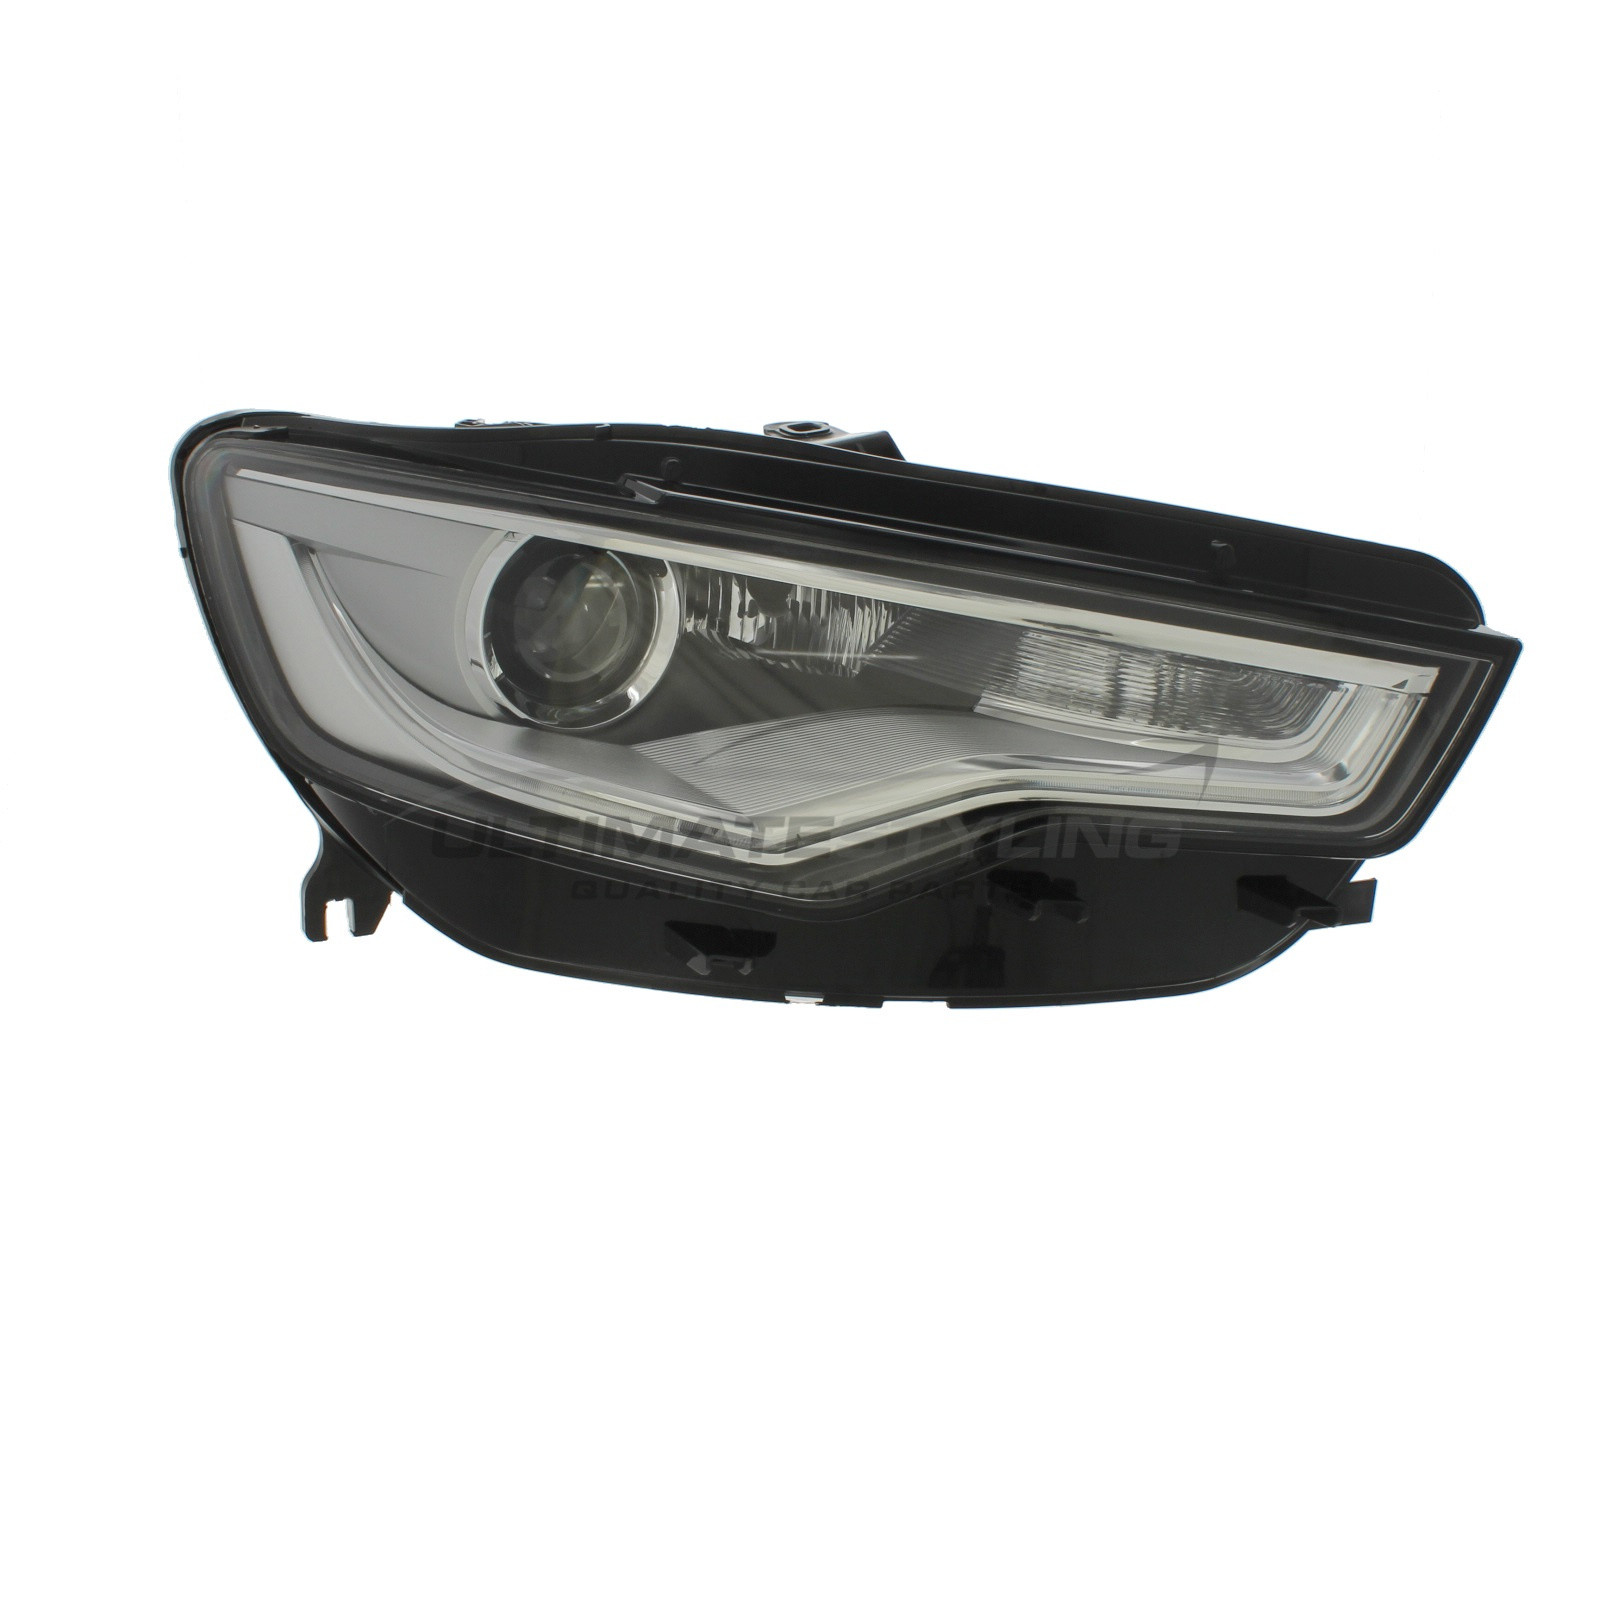 Headlight / Headlamp for Audi A6